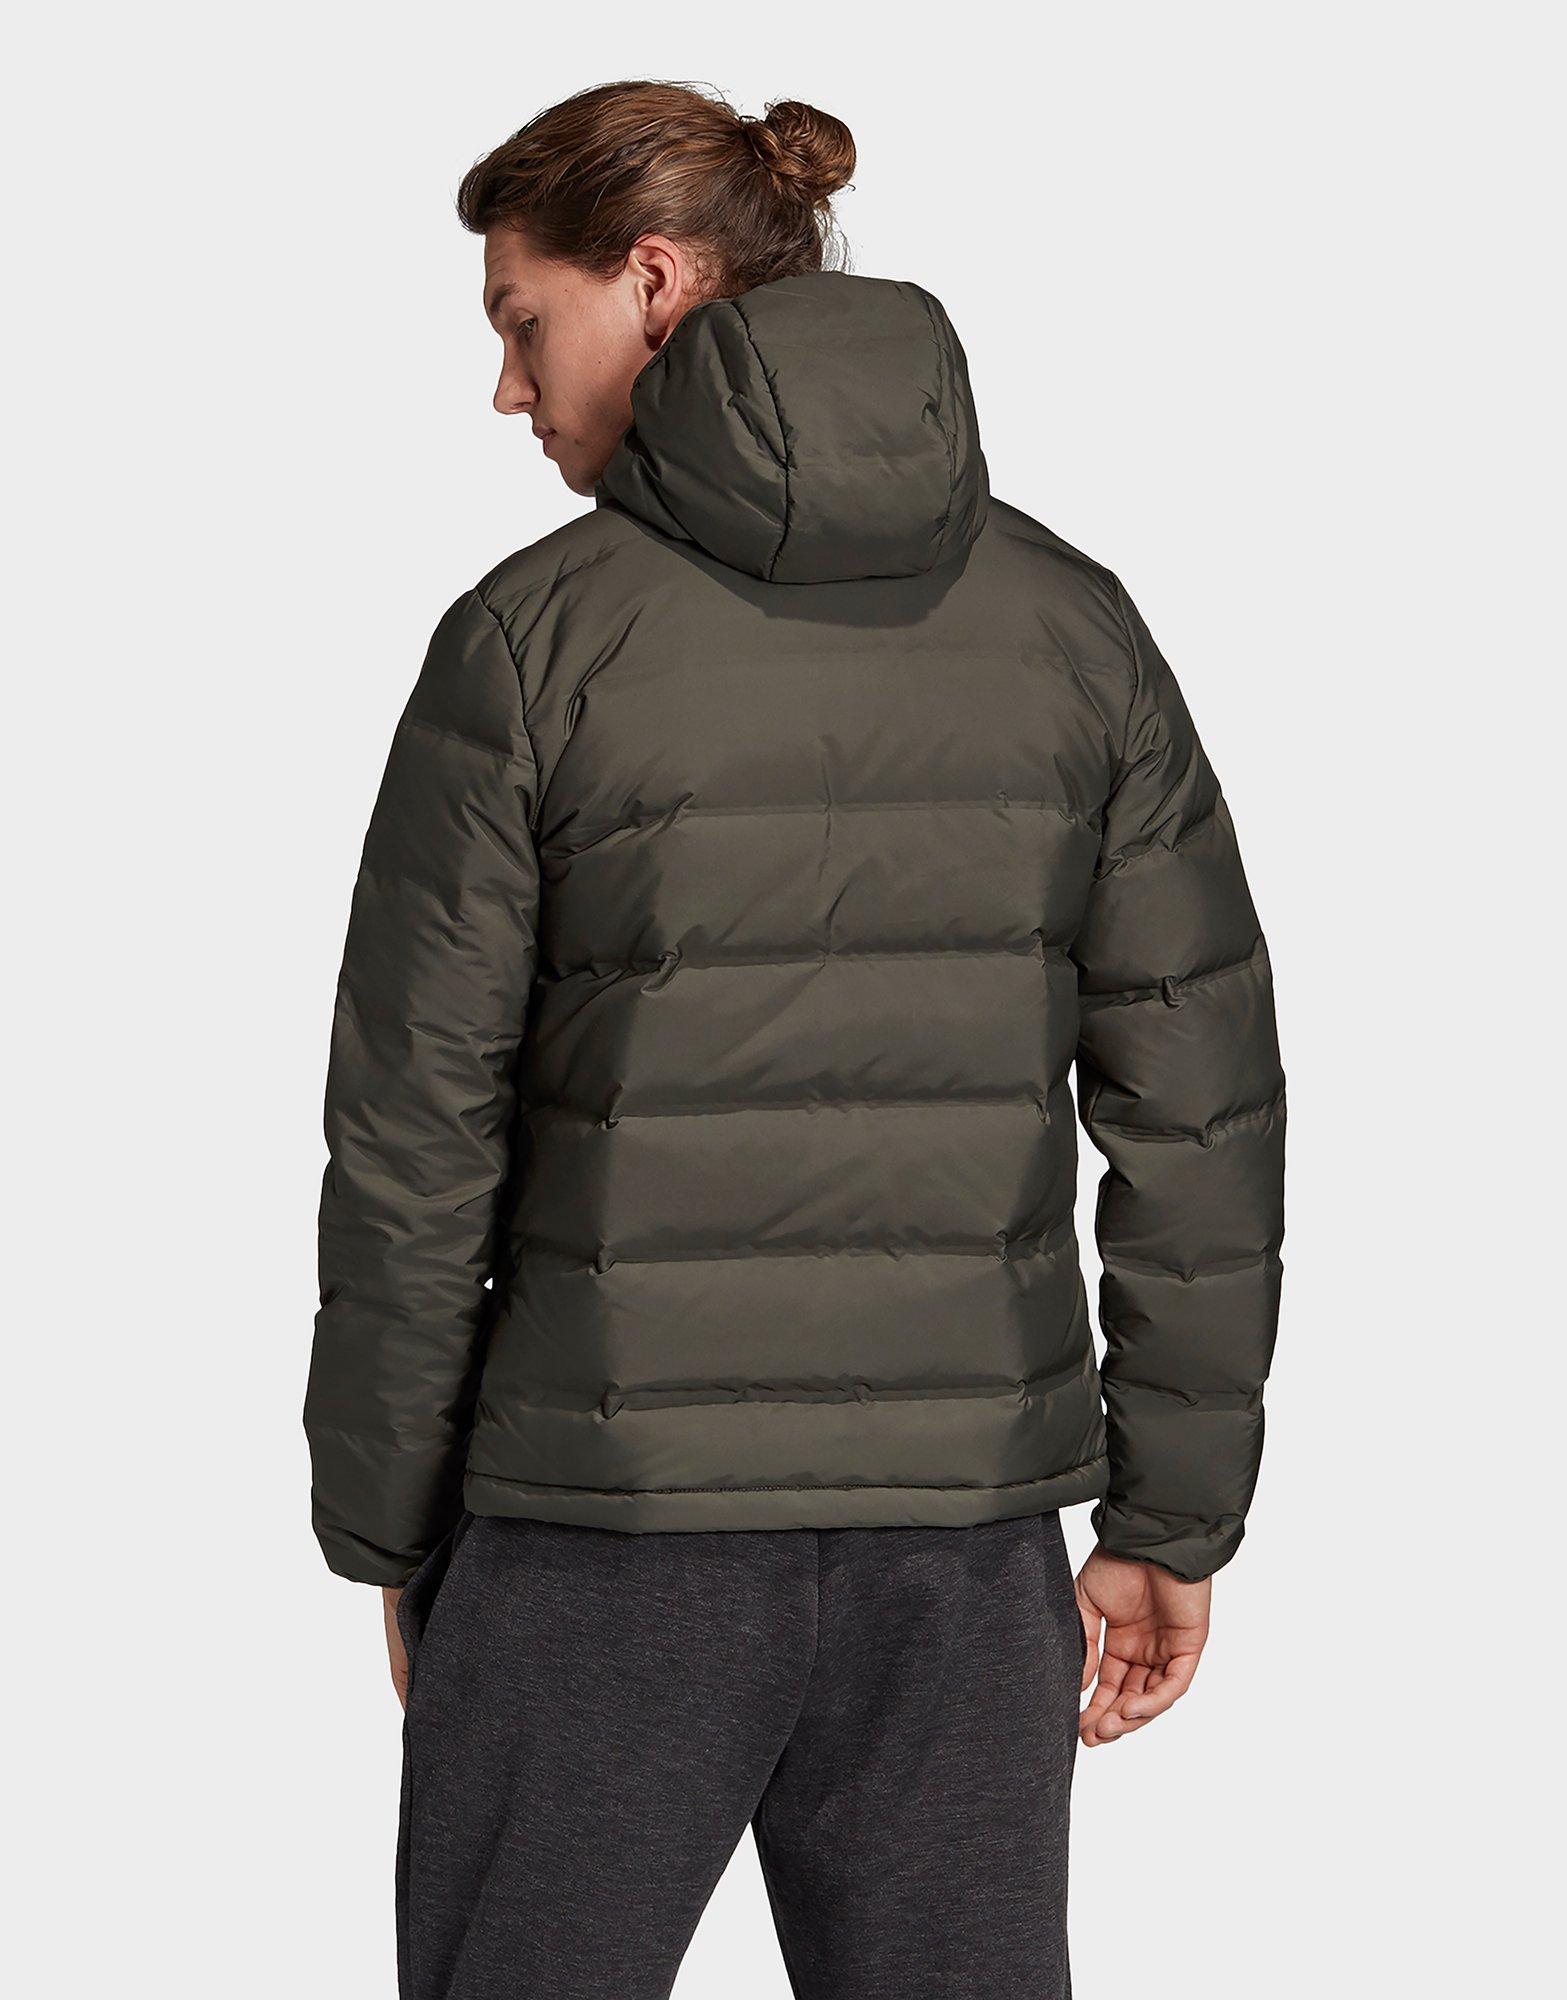 adidas helionic hooded jacket